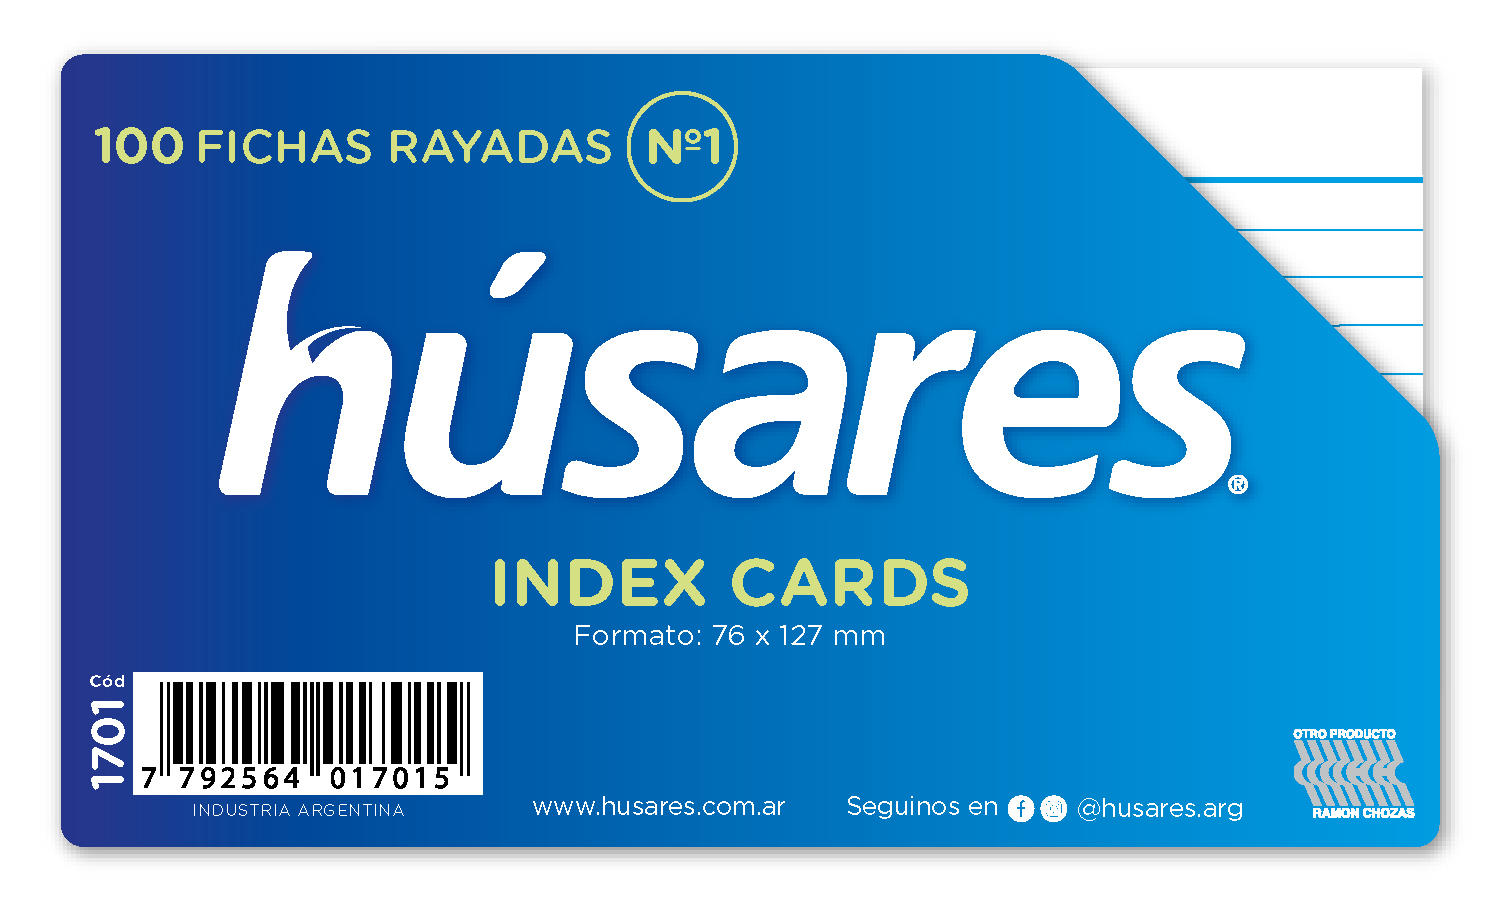 FICHAS RAYADAS HUSARES X 100 Nº 1